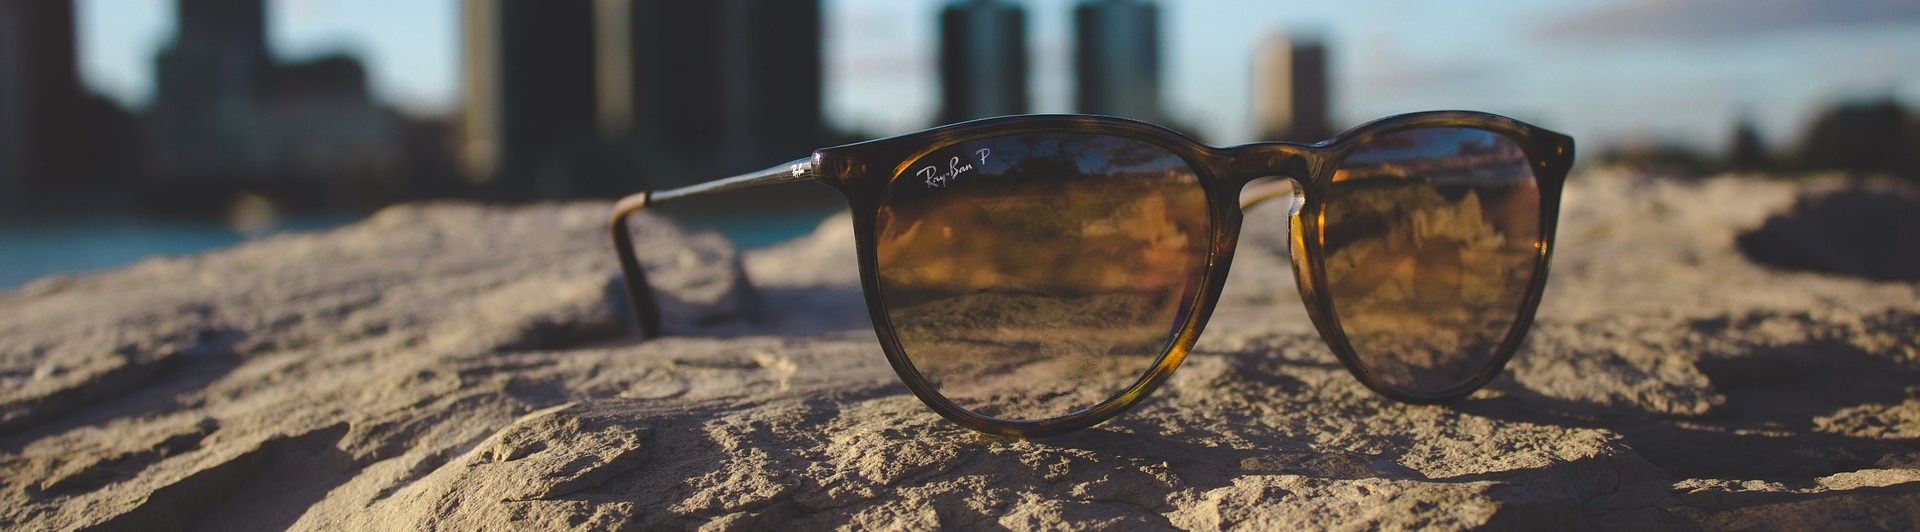 Sonnenbrillen mit Sehstärke Korrekturbrille Fehlsichtigkeit Optik Weißmann Brille kaufen online